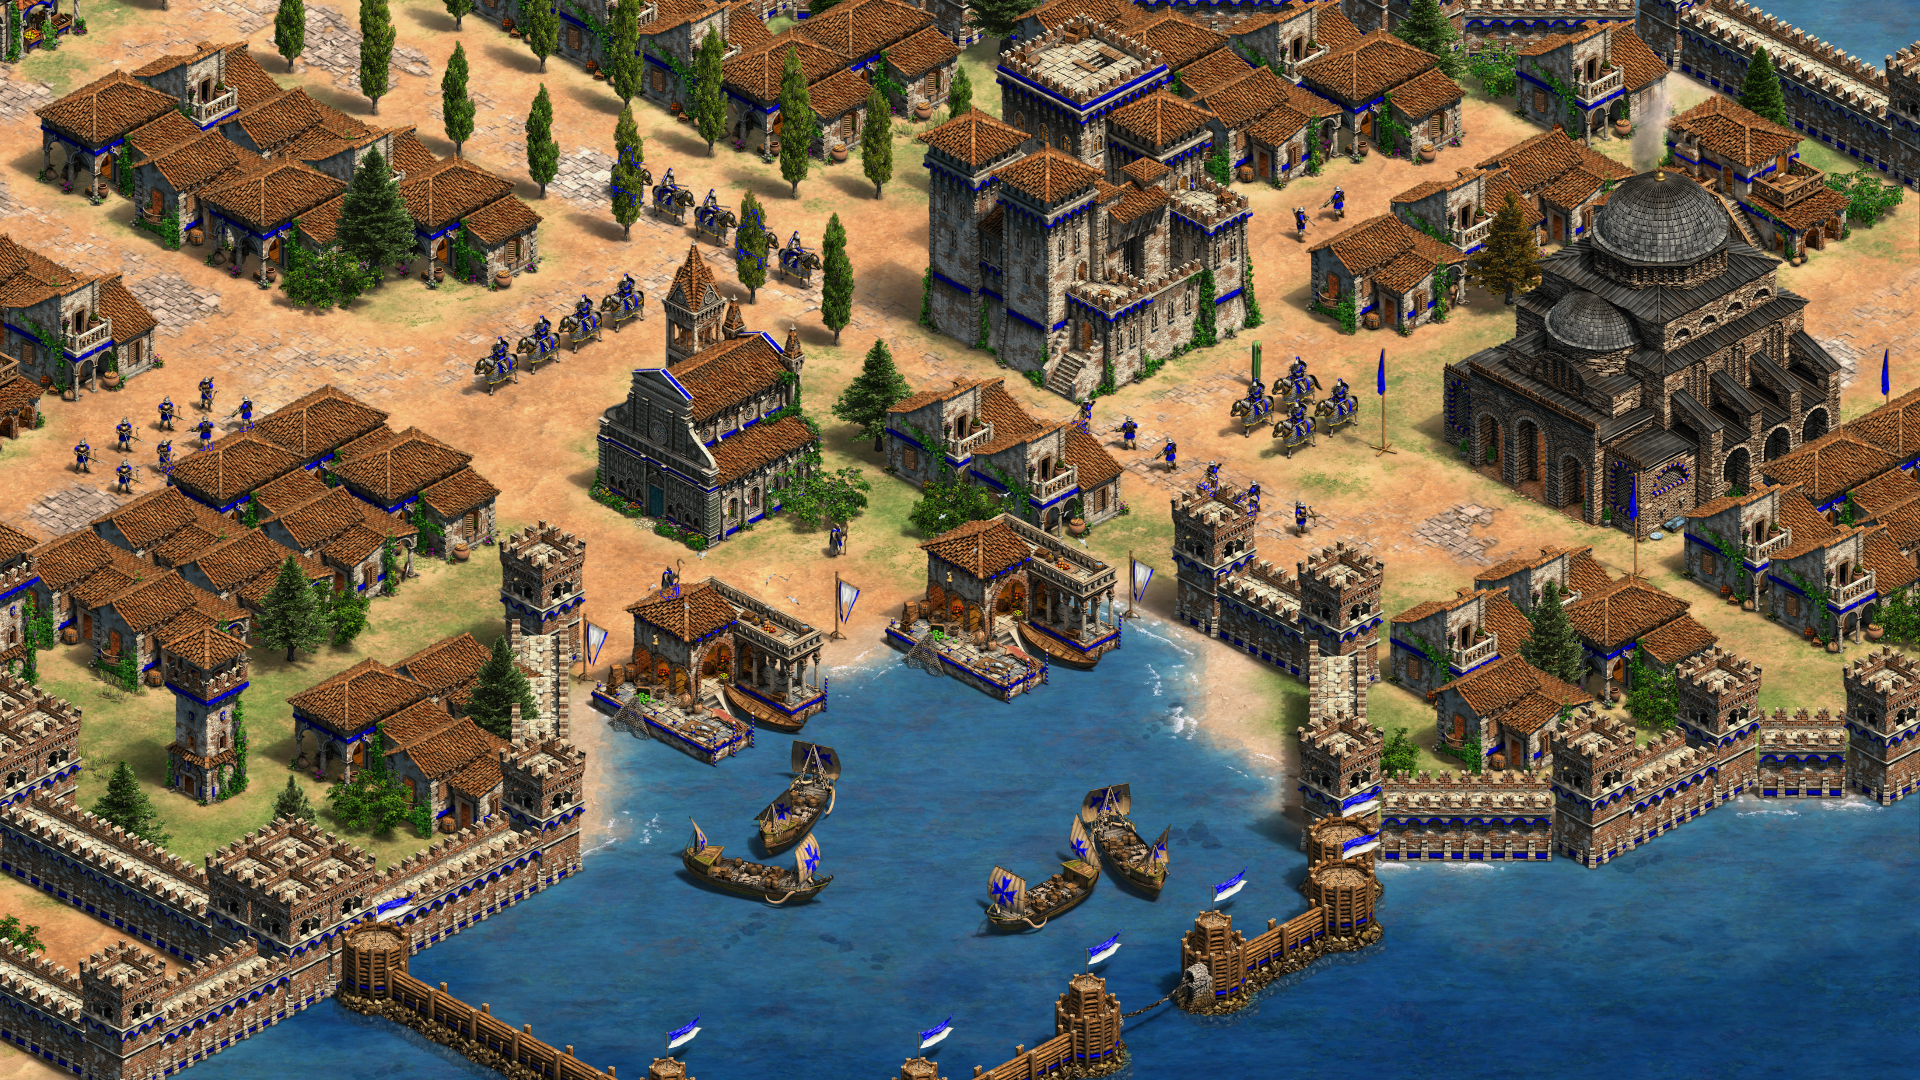 Imagen dentro del juego, de una ciudad costera